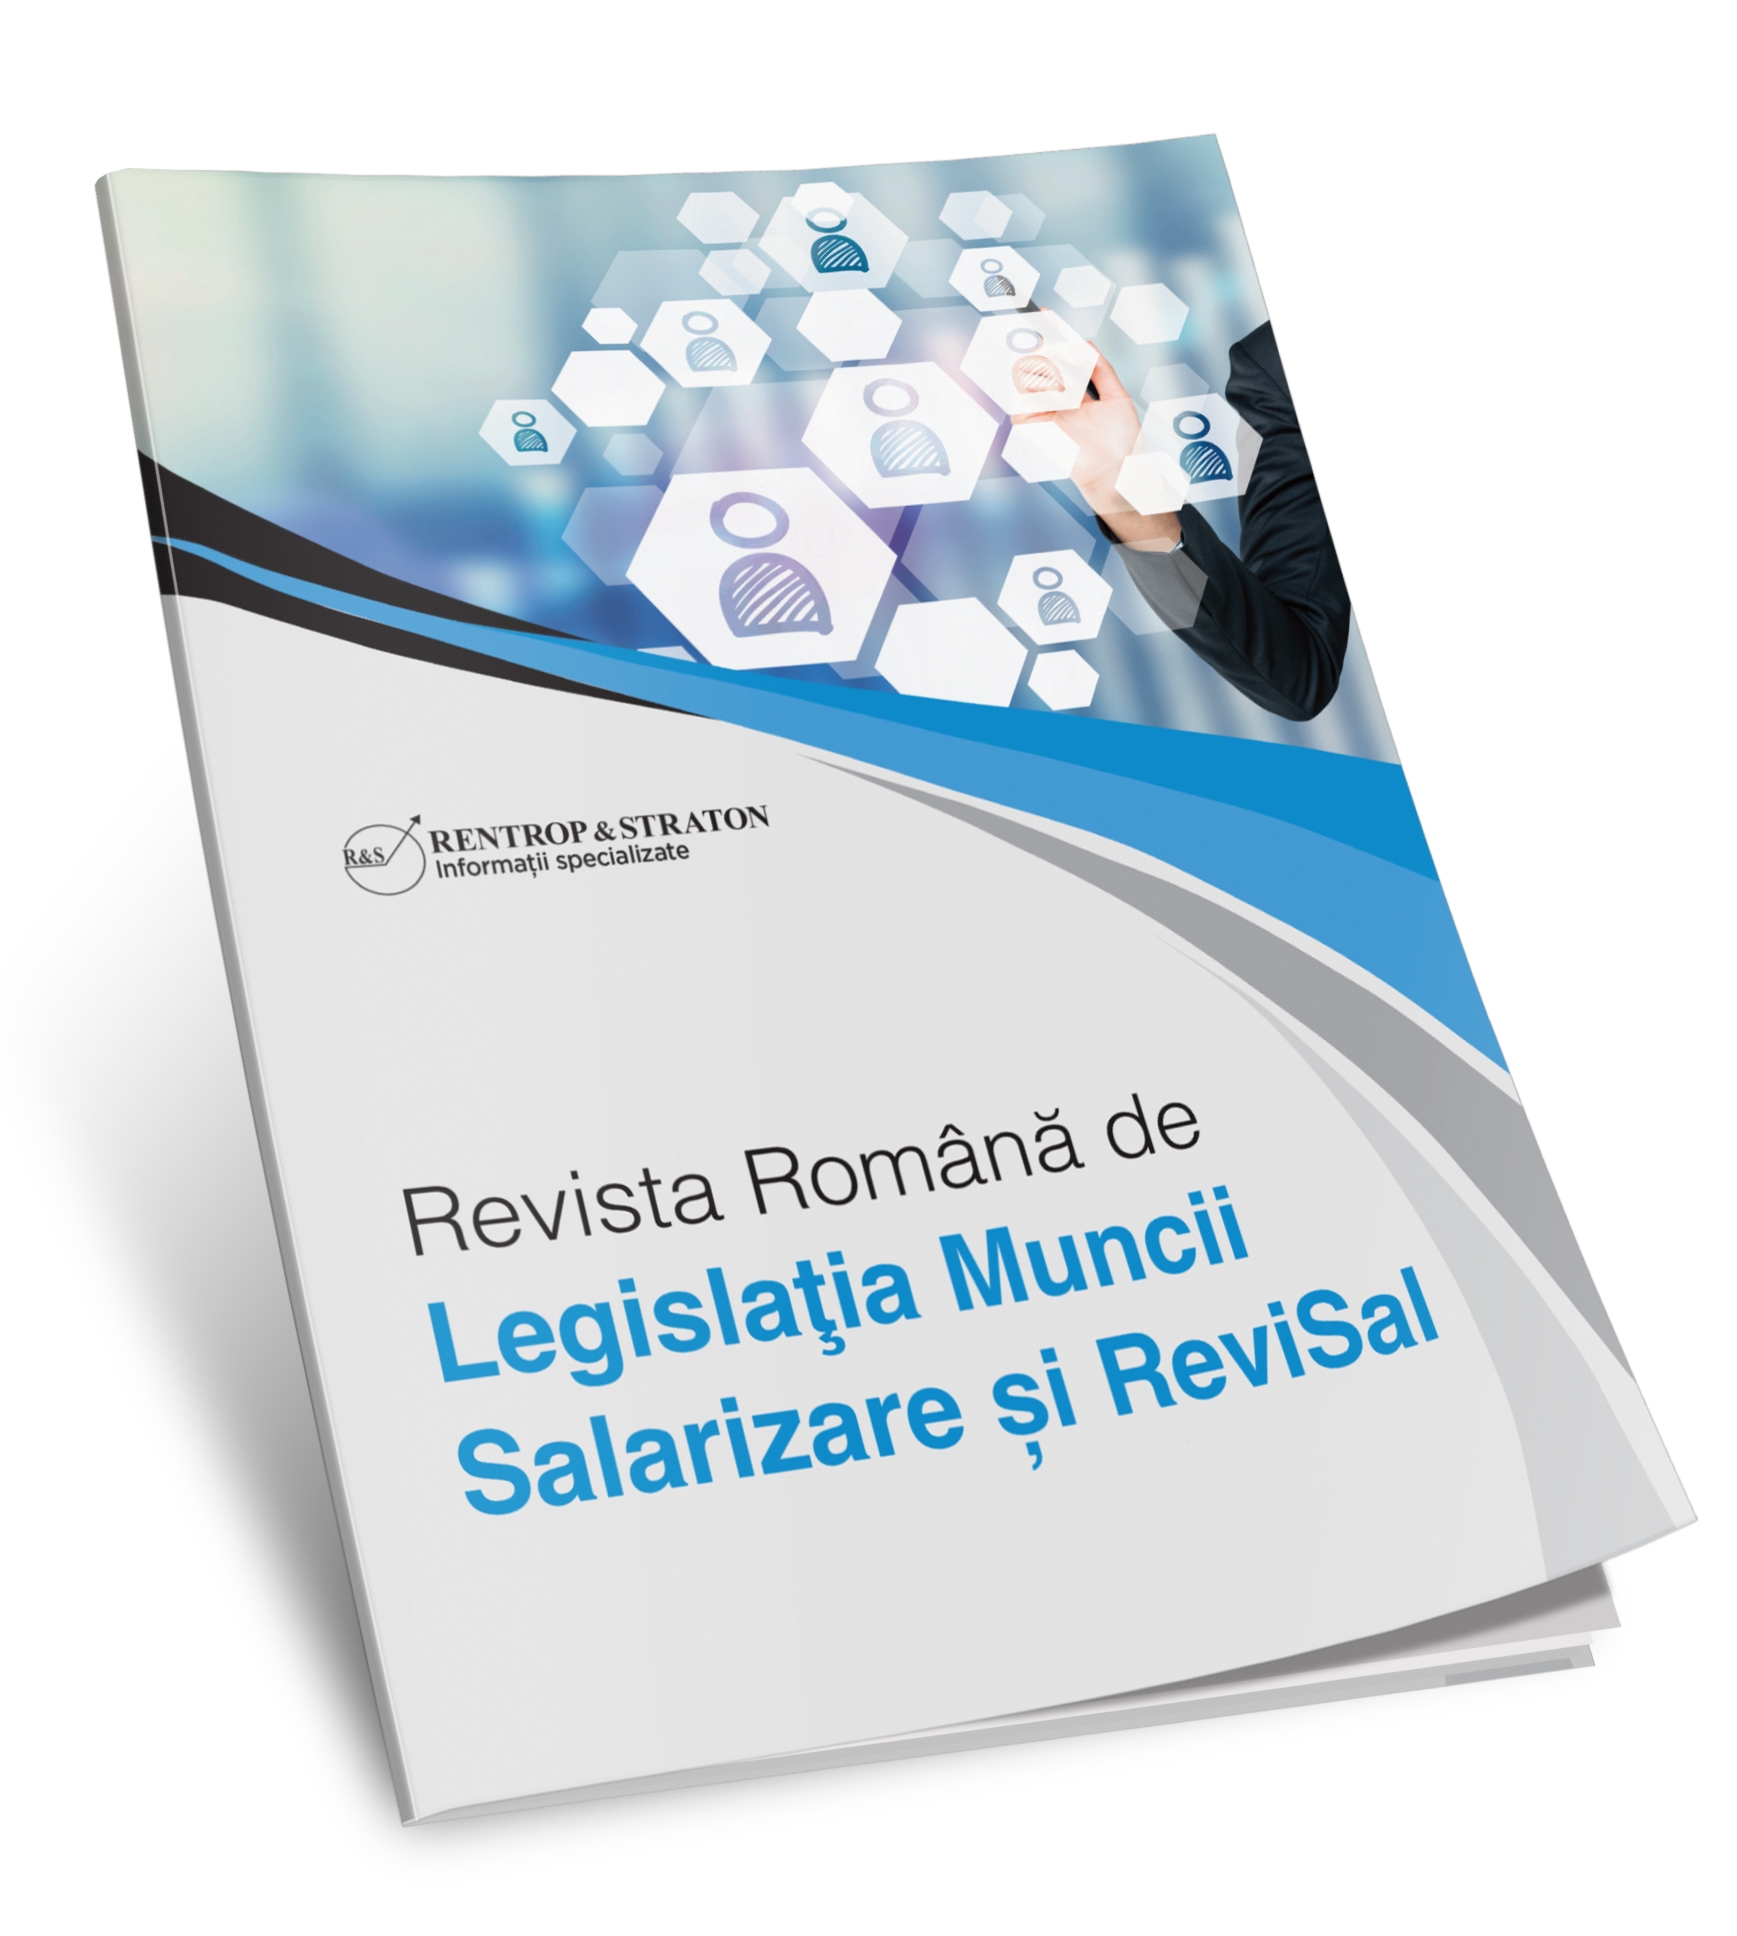 Revista Romana de Legislatia Muncii, Salarizare si ReviSal